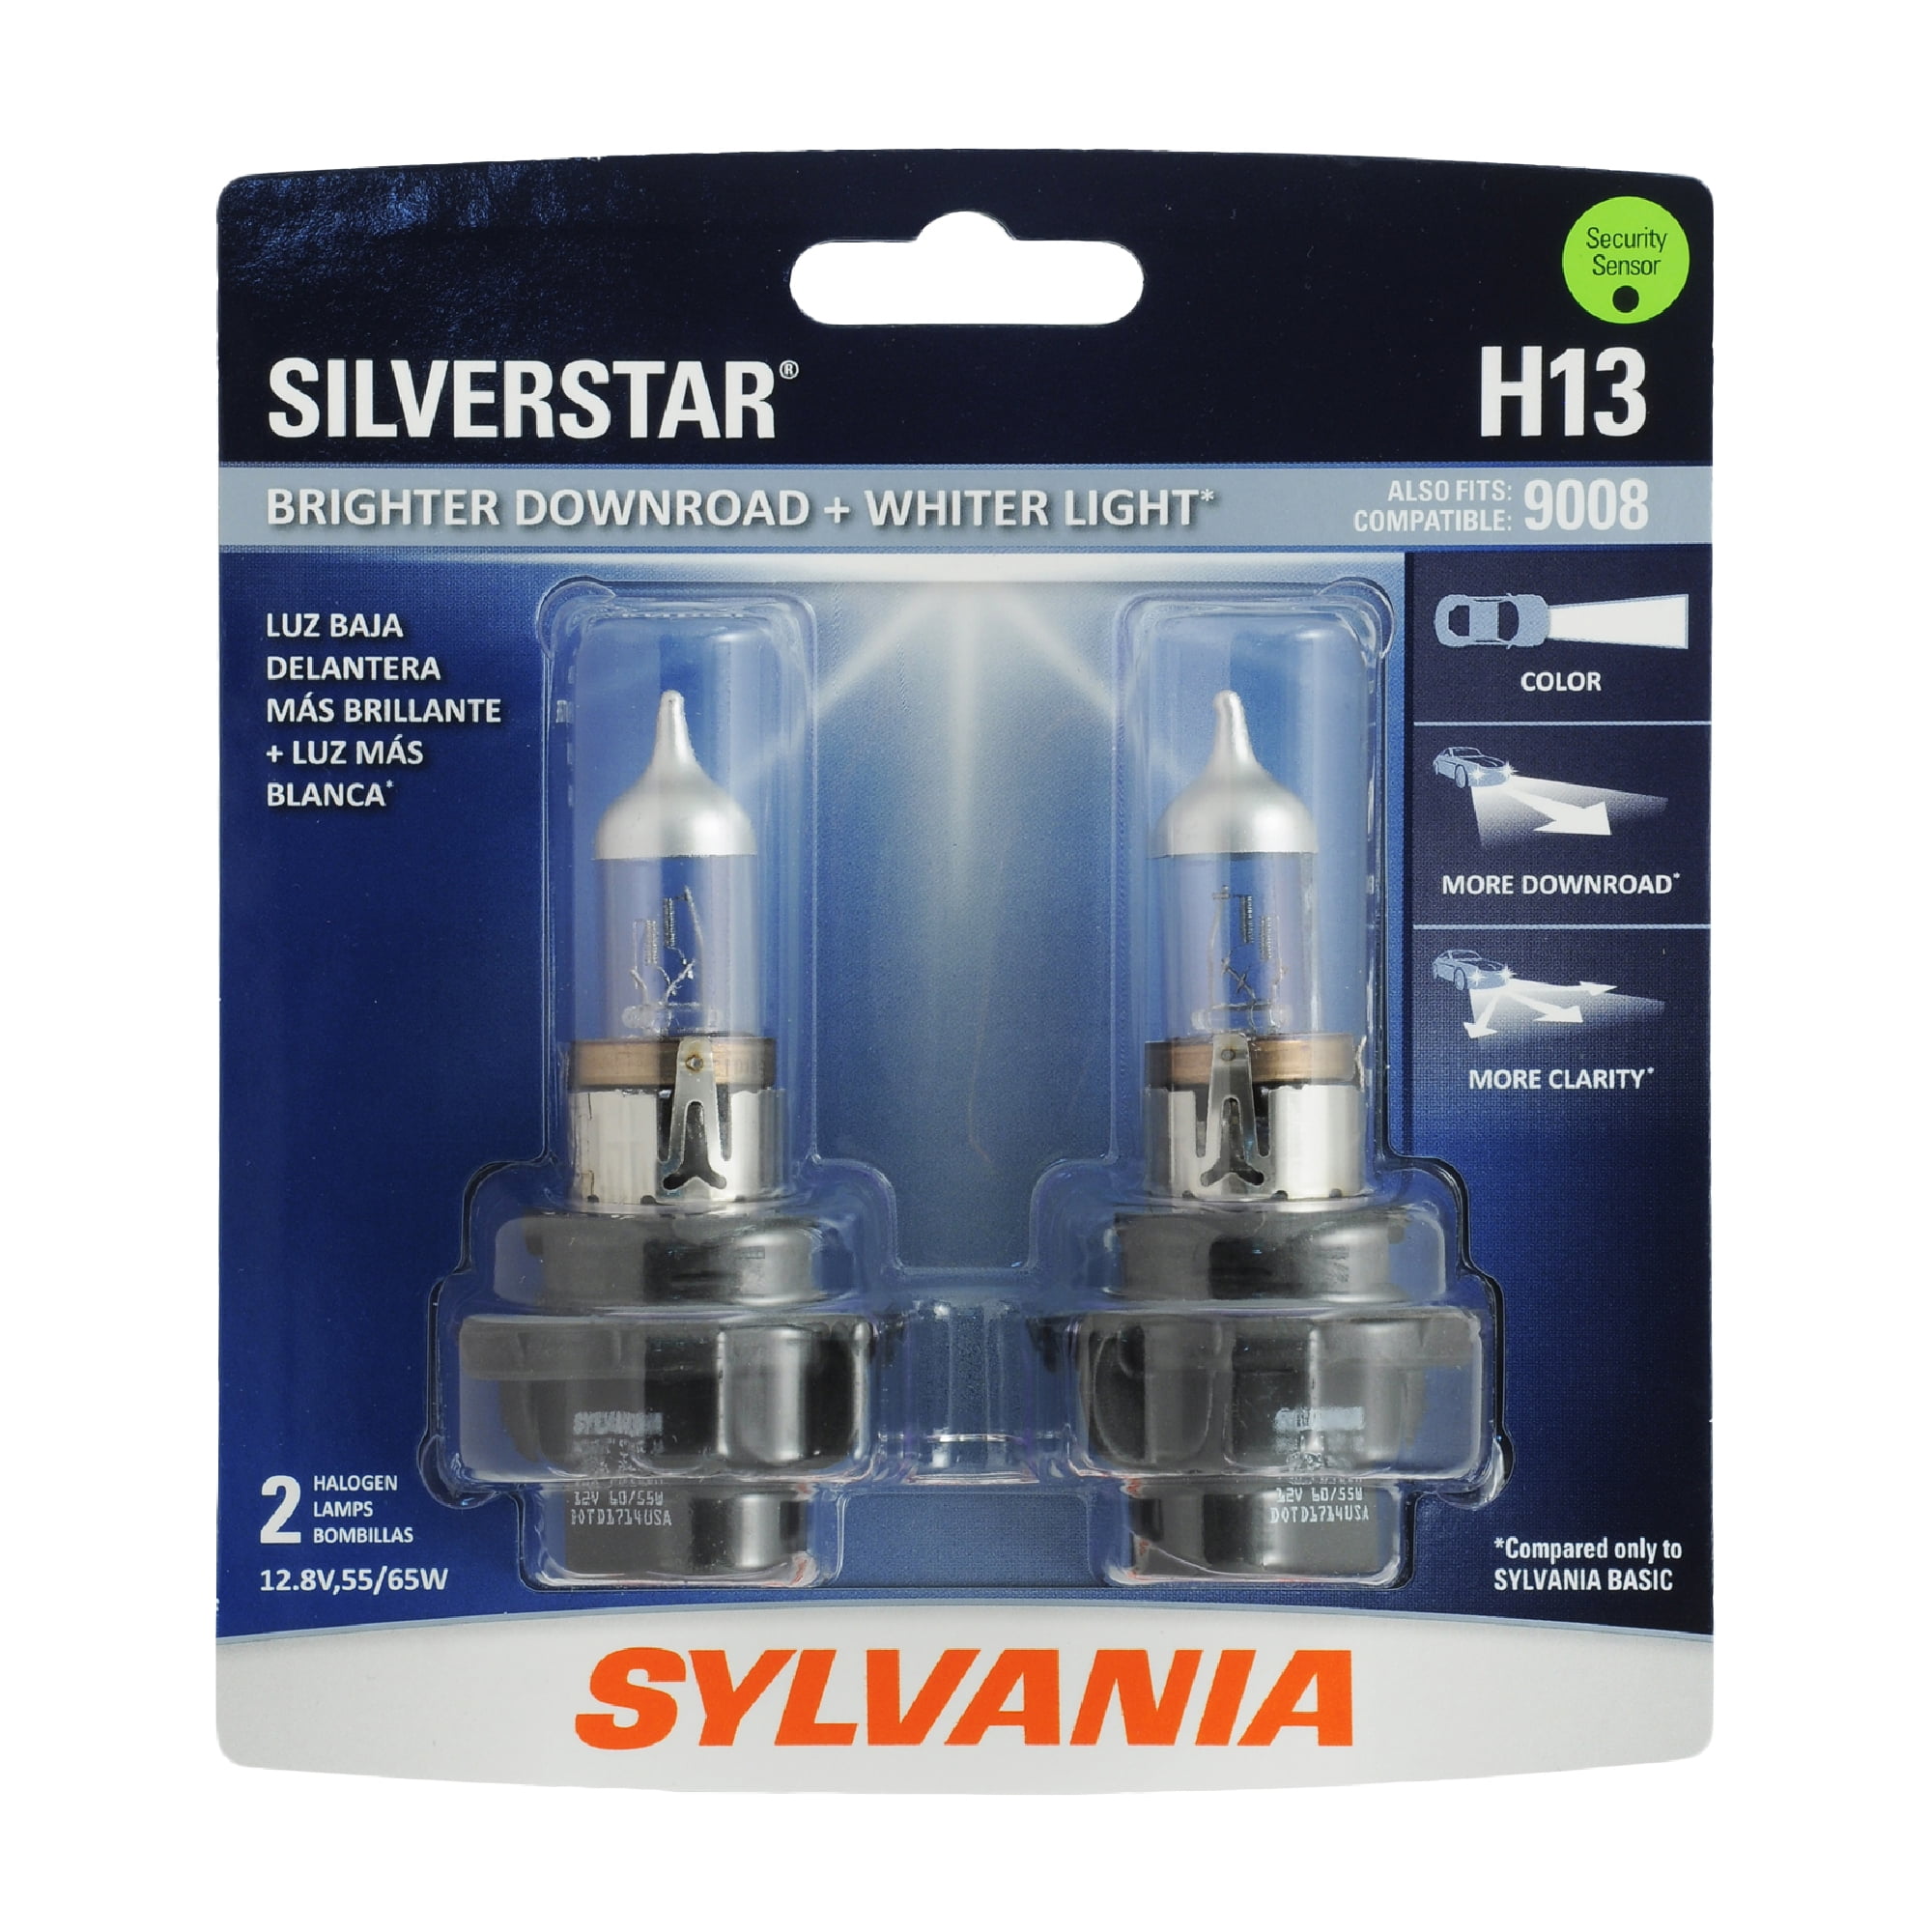 Sylvania H13 SilverStar Halogen Headlight Bulb, Pack of 2.